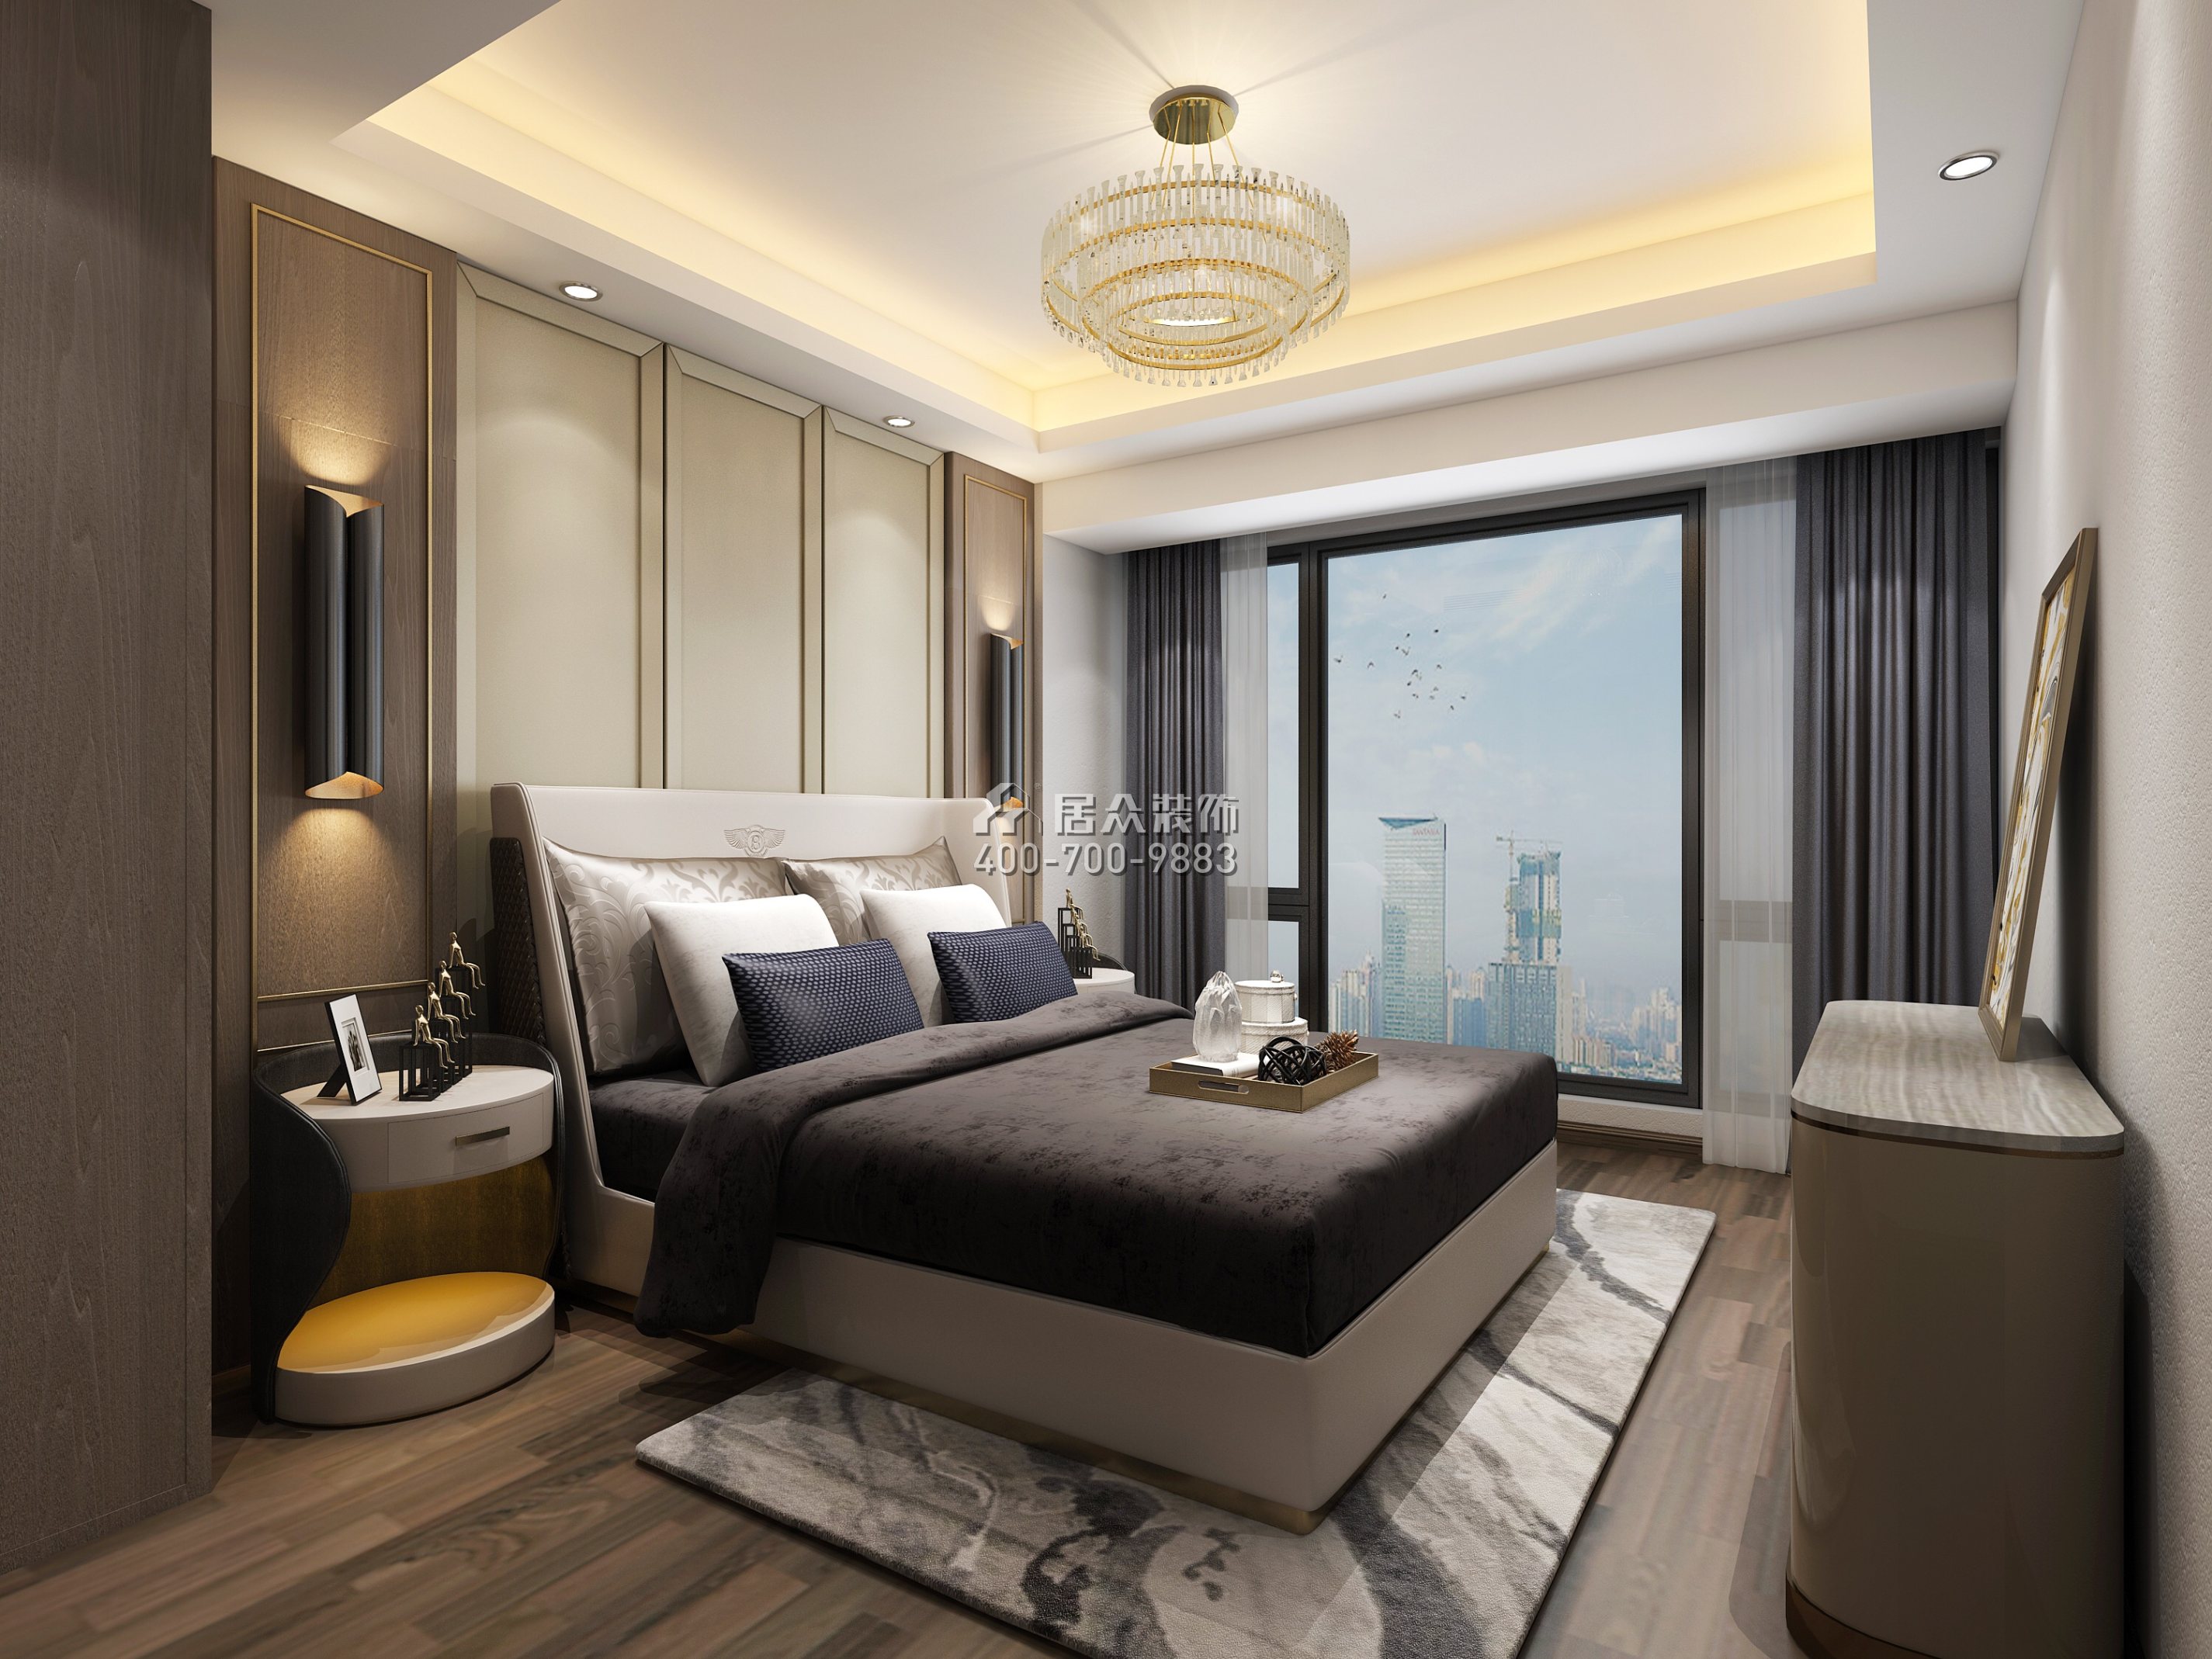 联投东方华府二期150平方米现代简约风格平层户型卧室装修效果图